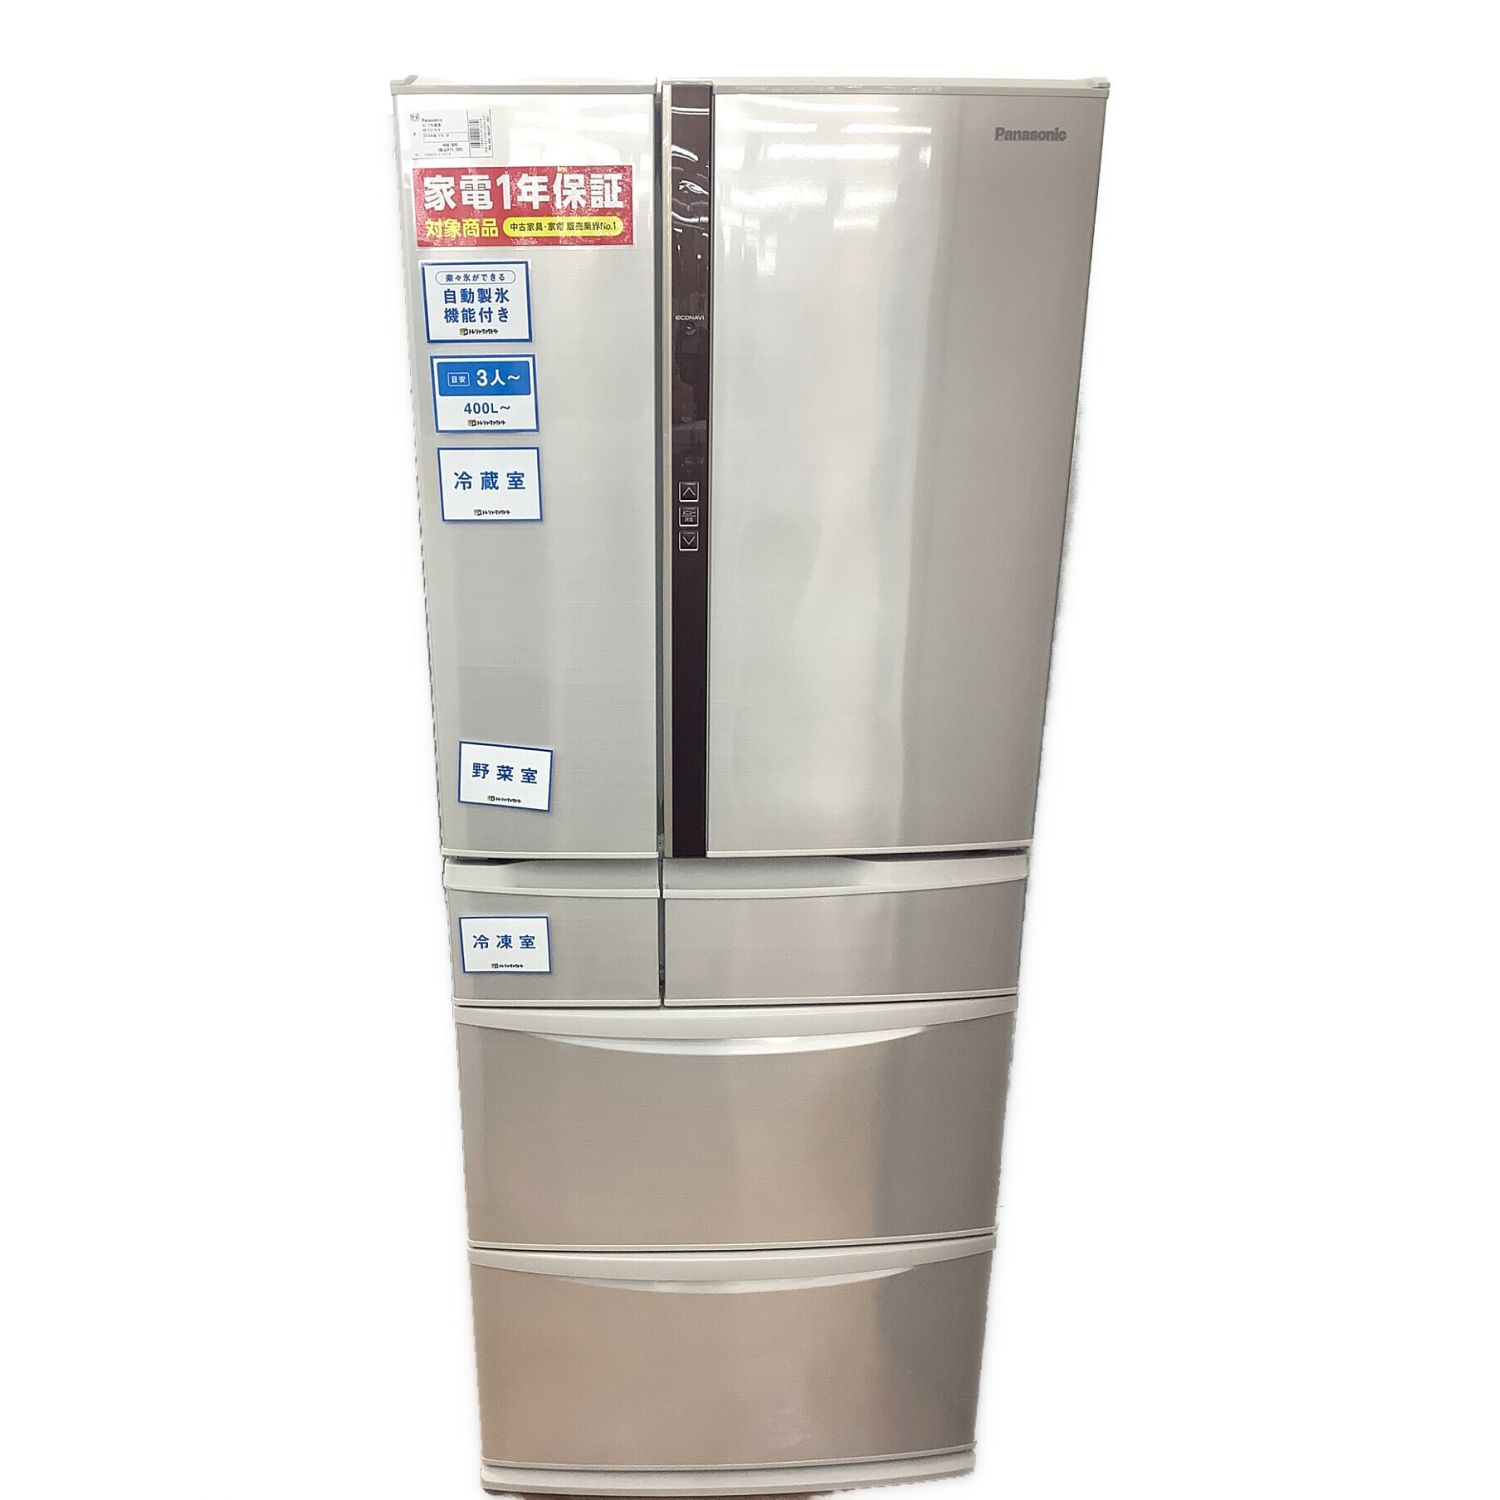 2016年式 451L ノンフロン冷凍冷蔵庫 パナソニック NR-F461V-N僕の400L〜冷蔵庫